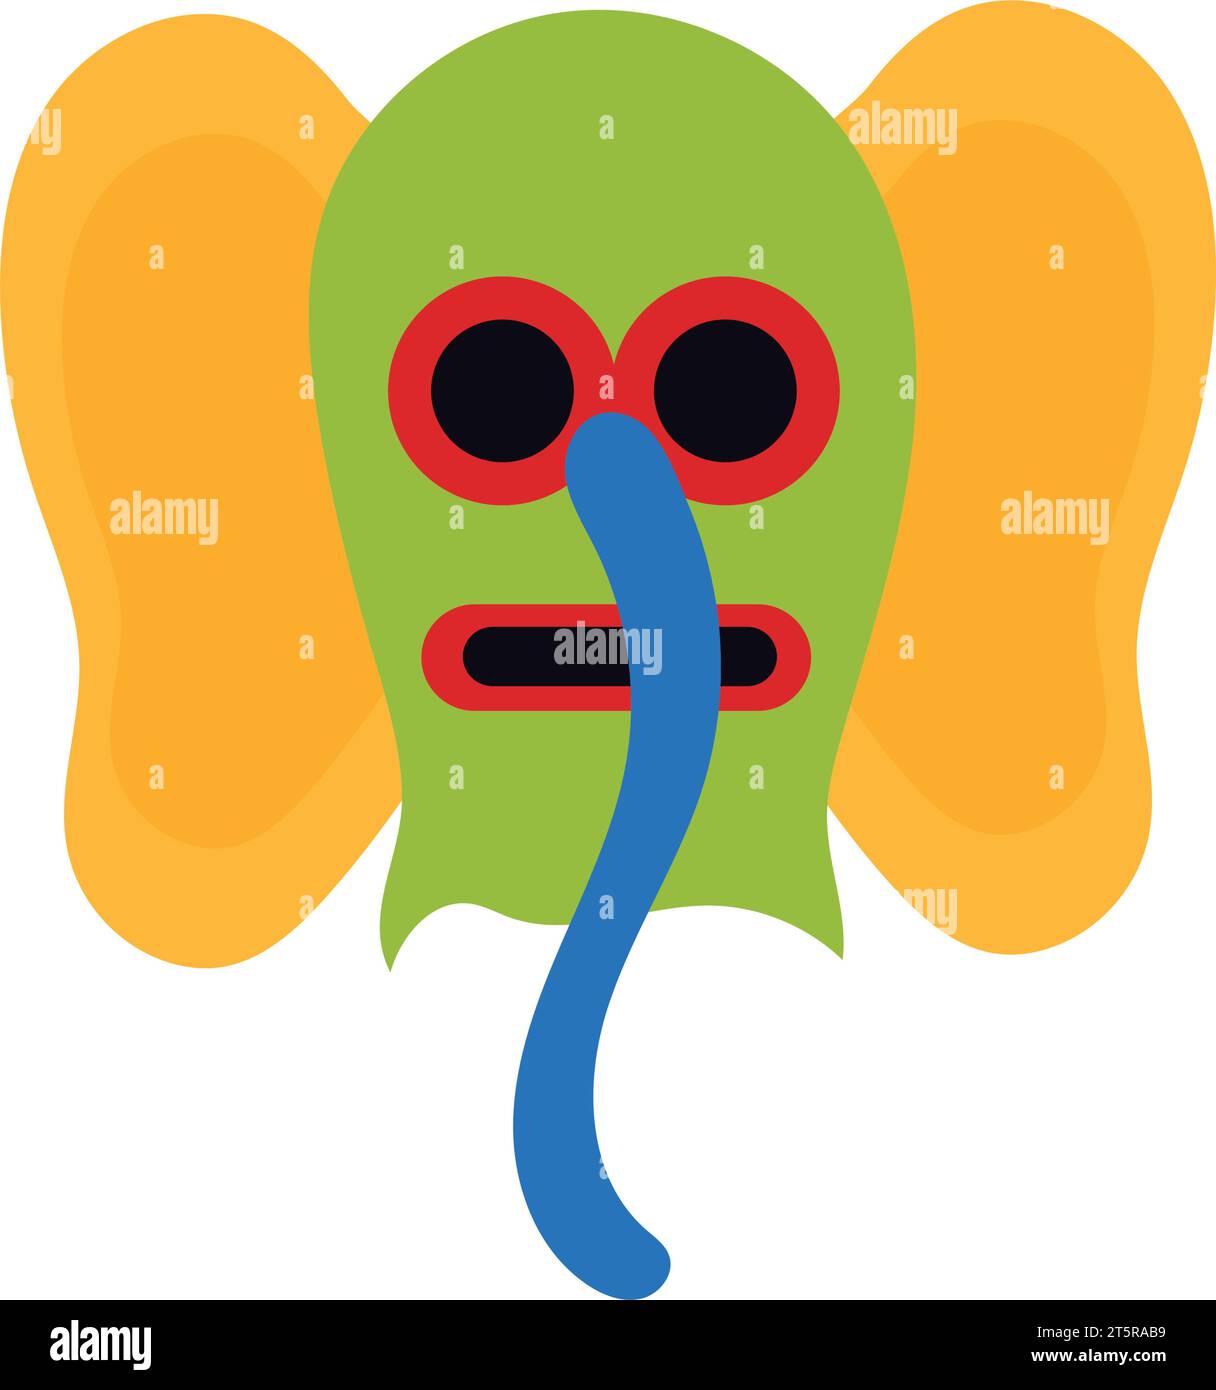 marimonda mask illustration vector isolated Stock Vector